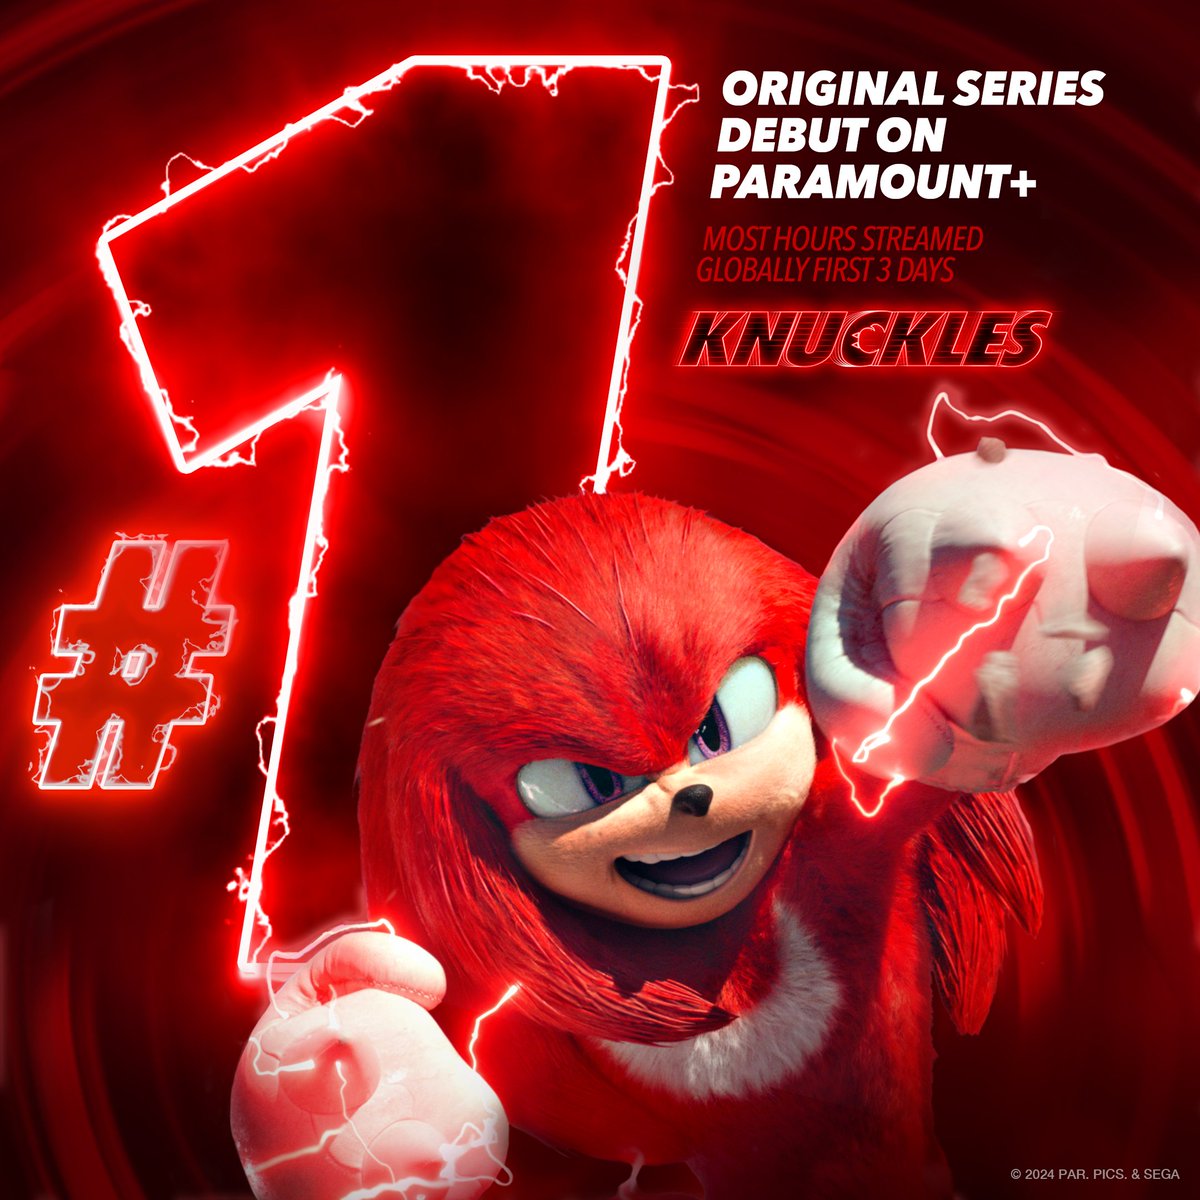 La serie de Knuckles ha superado el récord de la serie más vista en sus primeros 3 días en Paramount+